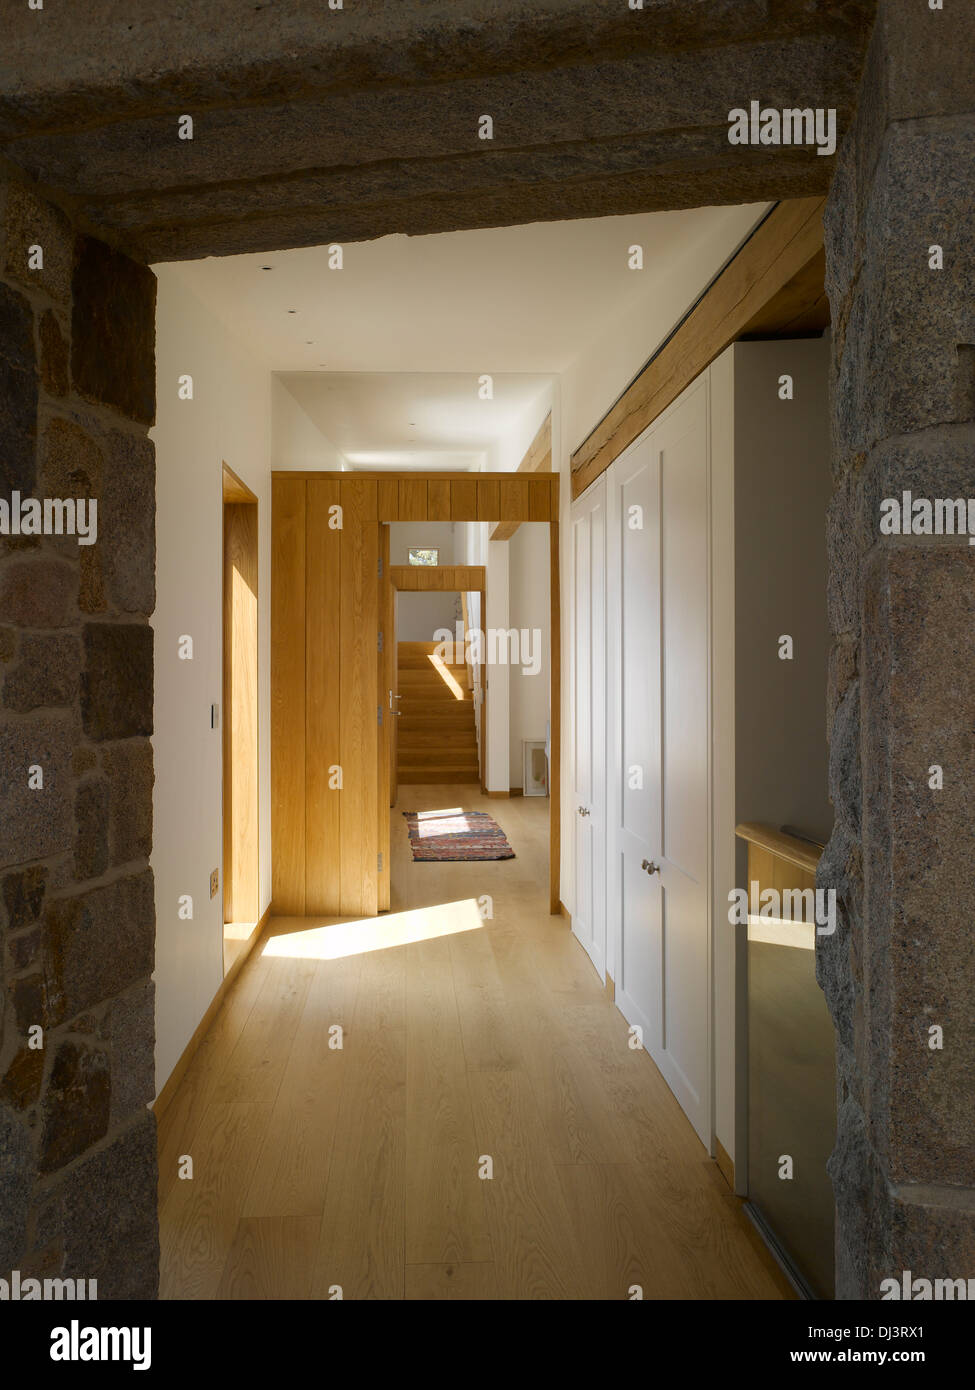 St Ouens House, St Ouens, Royaume-Uni. Architecte : architectes d'Hudson, 2013. Couloir avec lumière naturelle. Banque D'Images